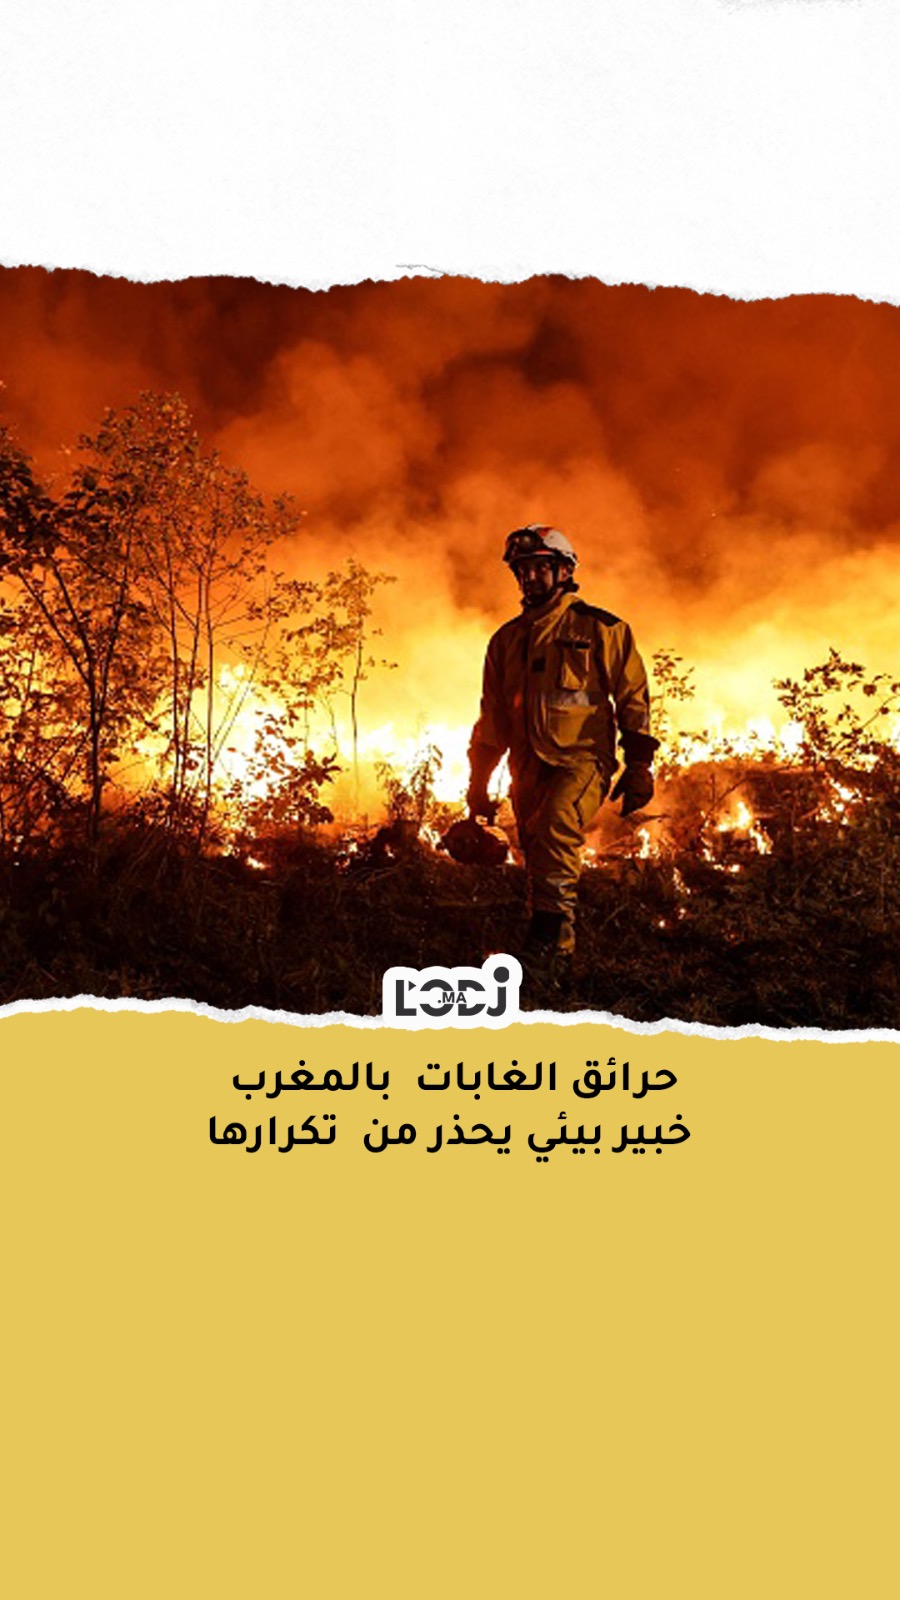 تحذير حرائق الغابات  بالمغرب 